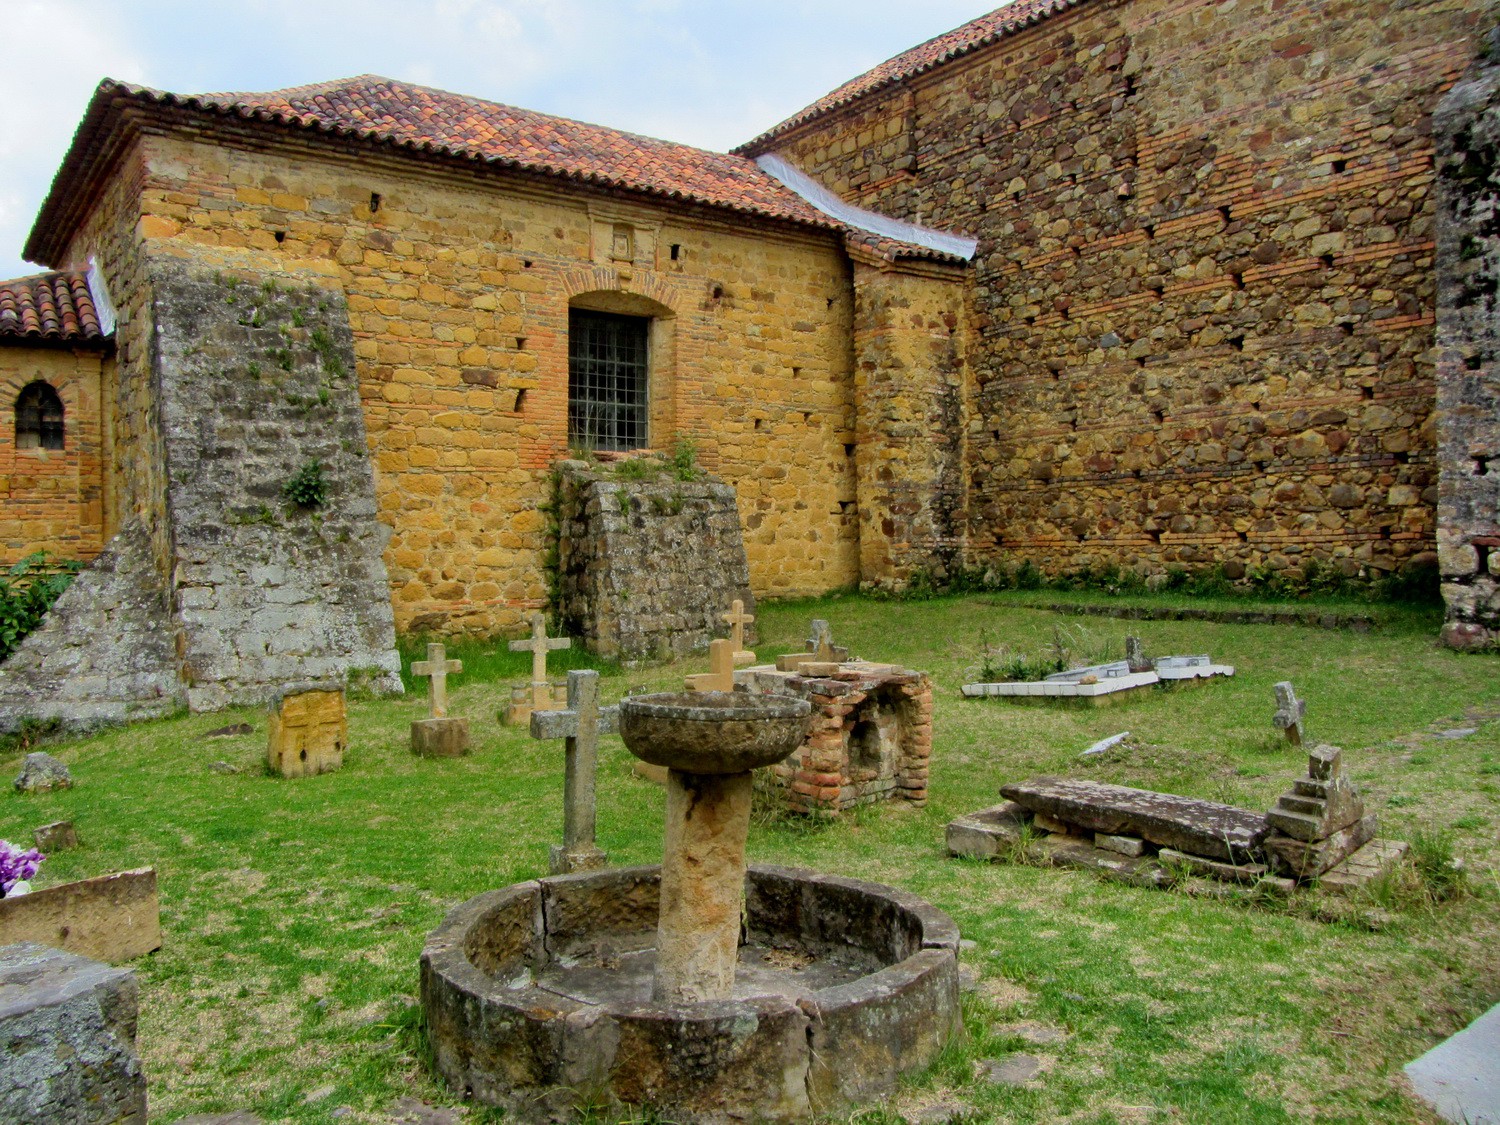 Monastery Convento del Santo Ecco Homo close to Villa de Leyva